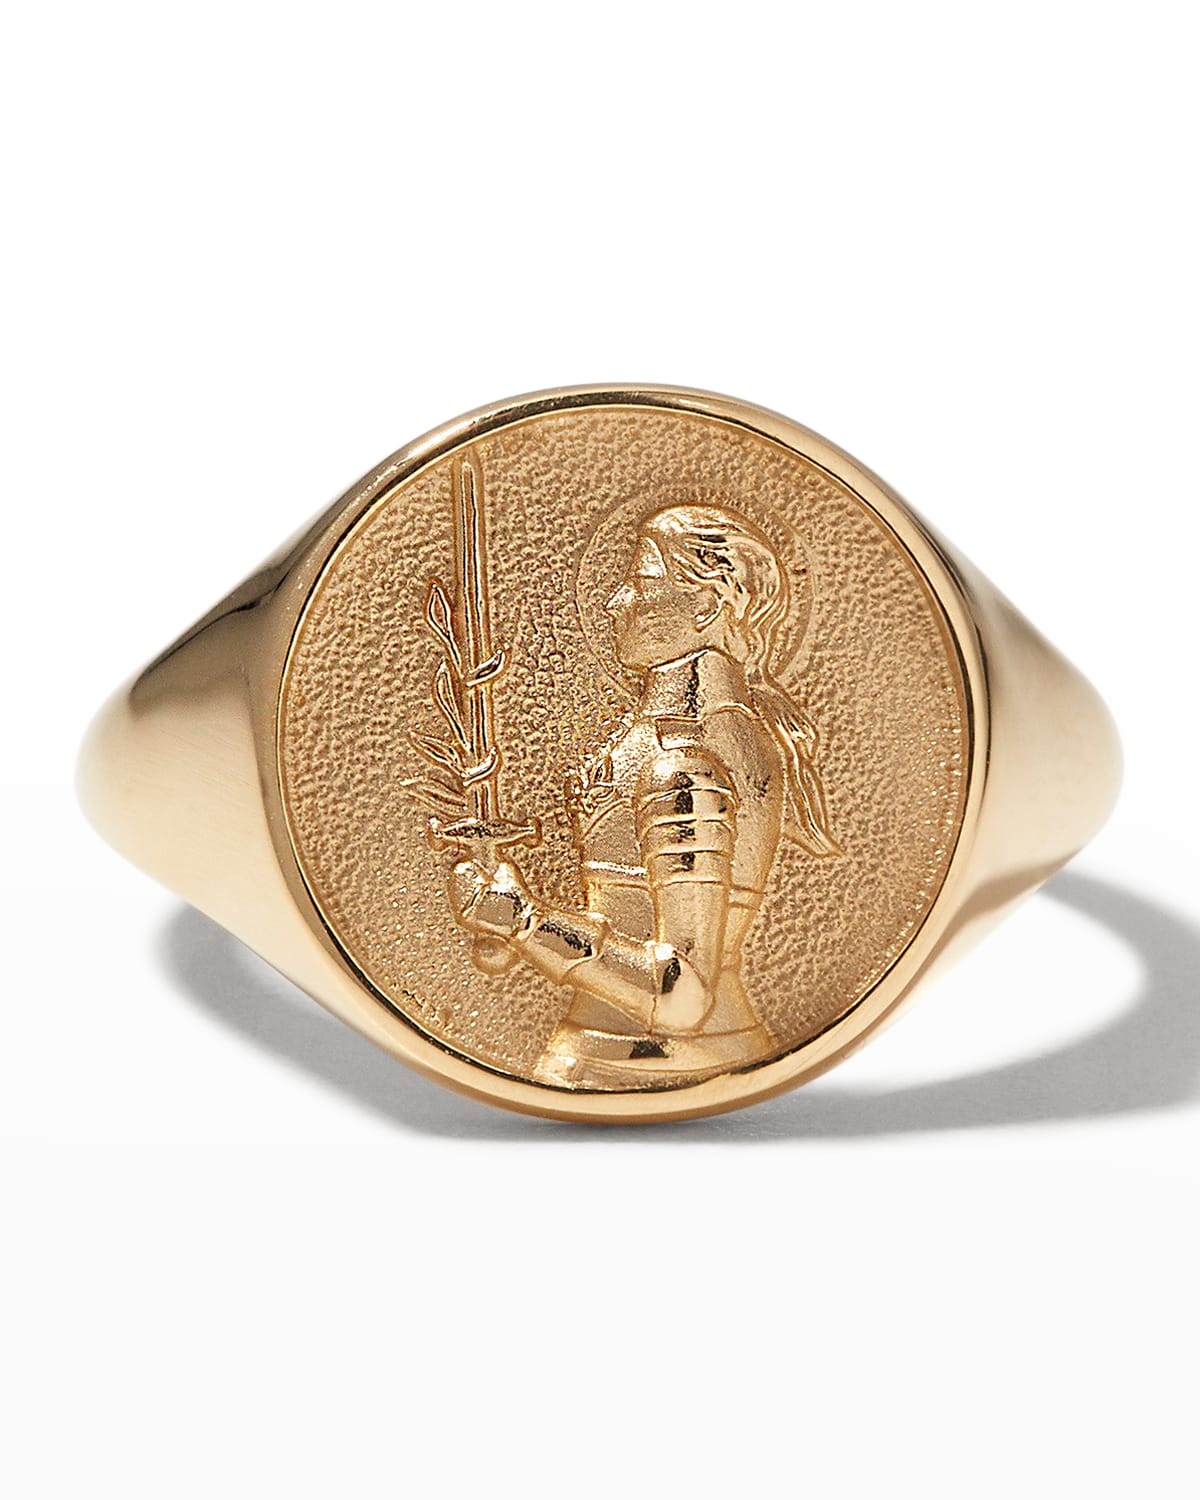 AWE INSPIRED 14K YELLOW GOLD JOAN OF ARC SIGNET RING